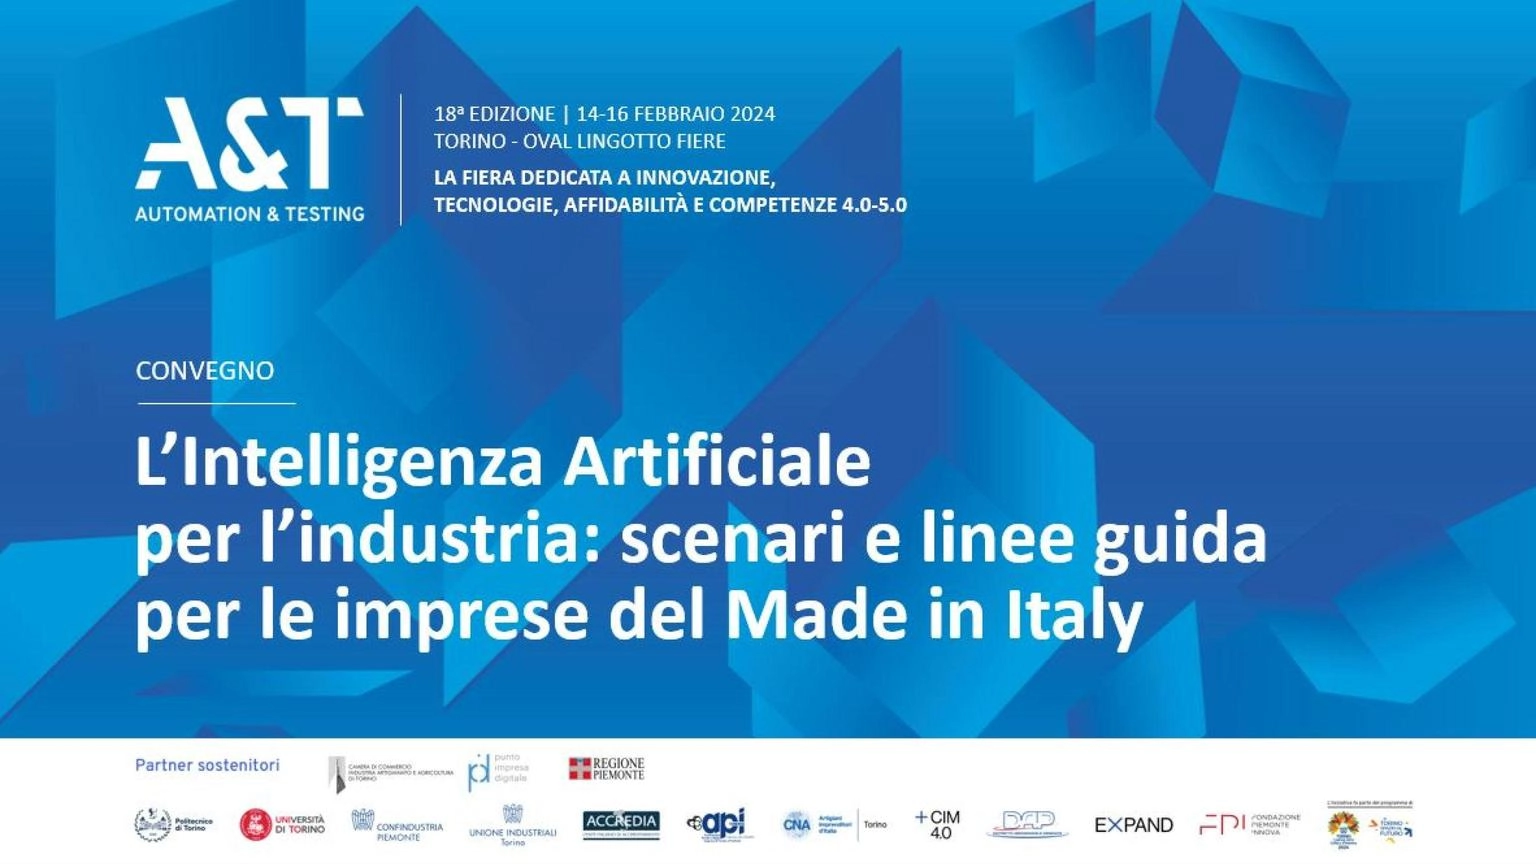 Innovazione al servizio dell'industria, a Torino la fiera A&T